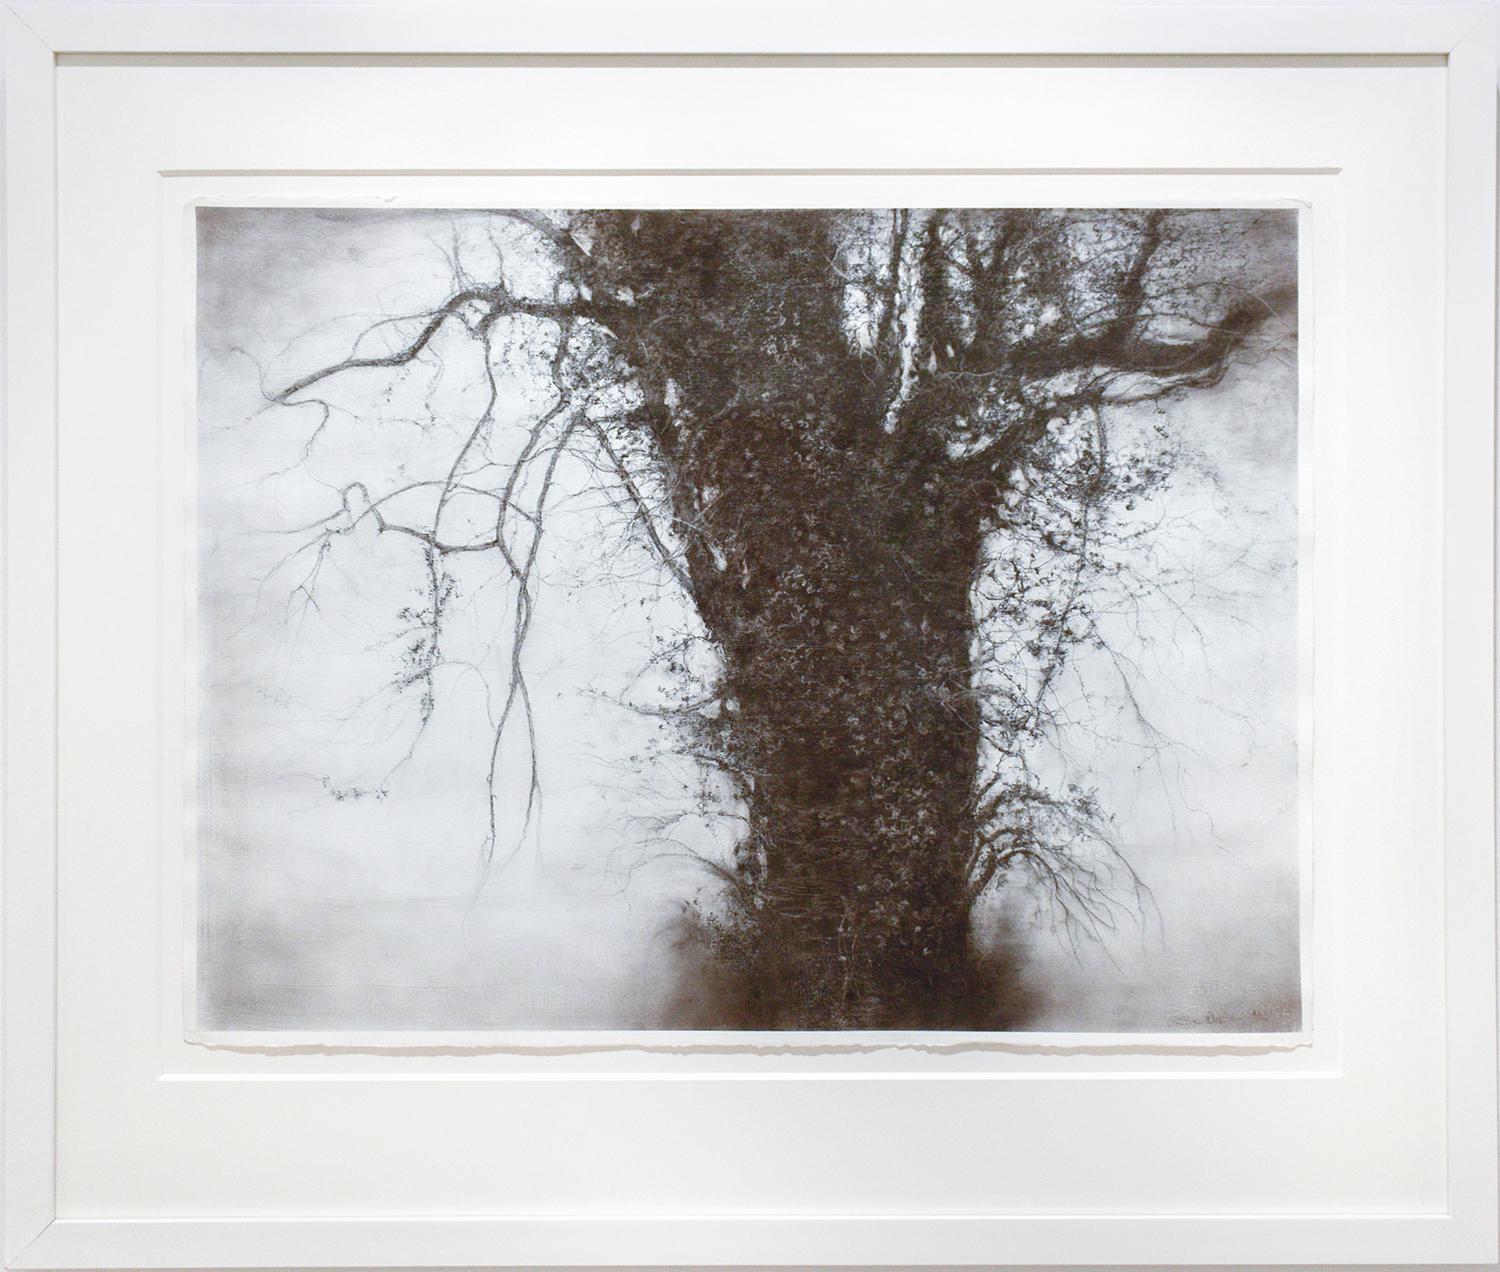 Beneath The Dripping Trees (Realistische Landschaftszeichnung in Schwarz-Weiß in Holzkohle) (Grau), Figurative Art, von Sue Bryan